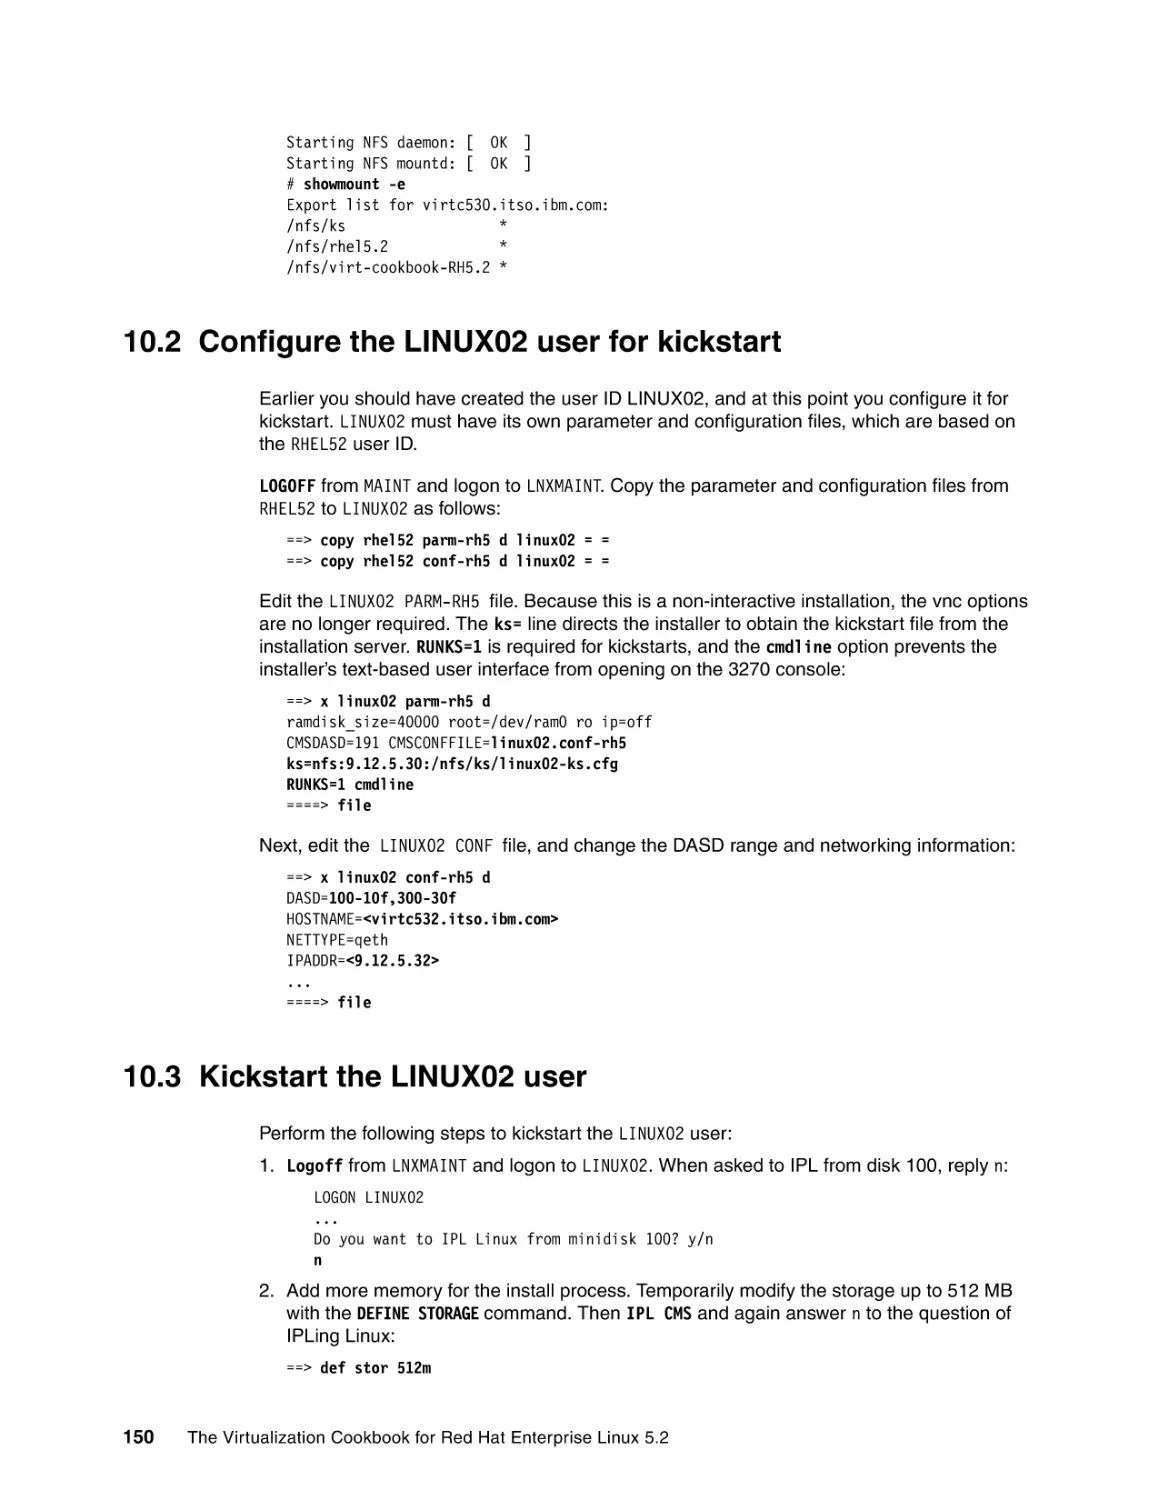 10.2 Configure the LINUX02 user for kickstart
10.3 Kickstart the LINUX02 user